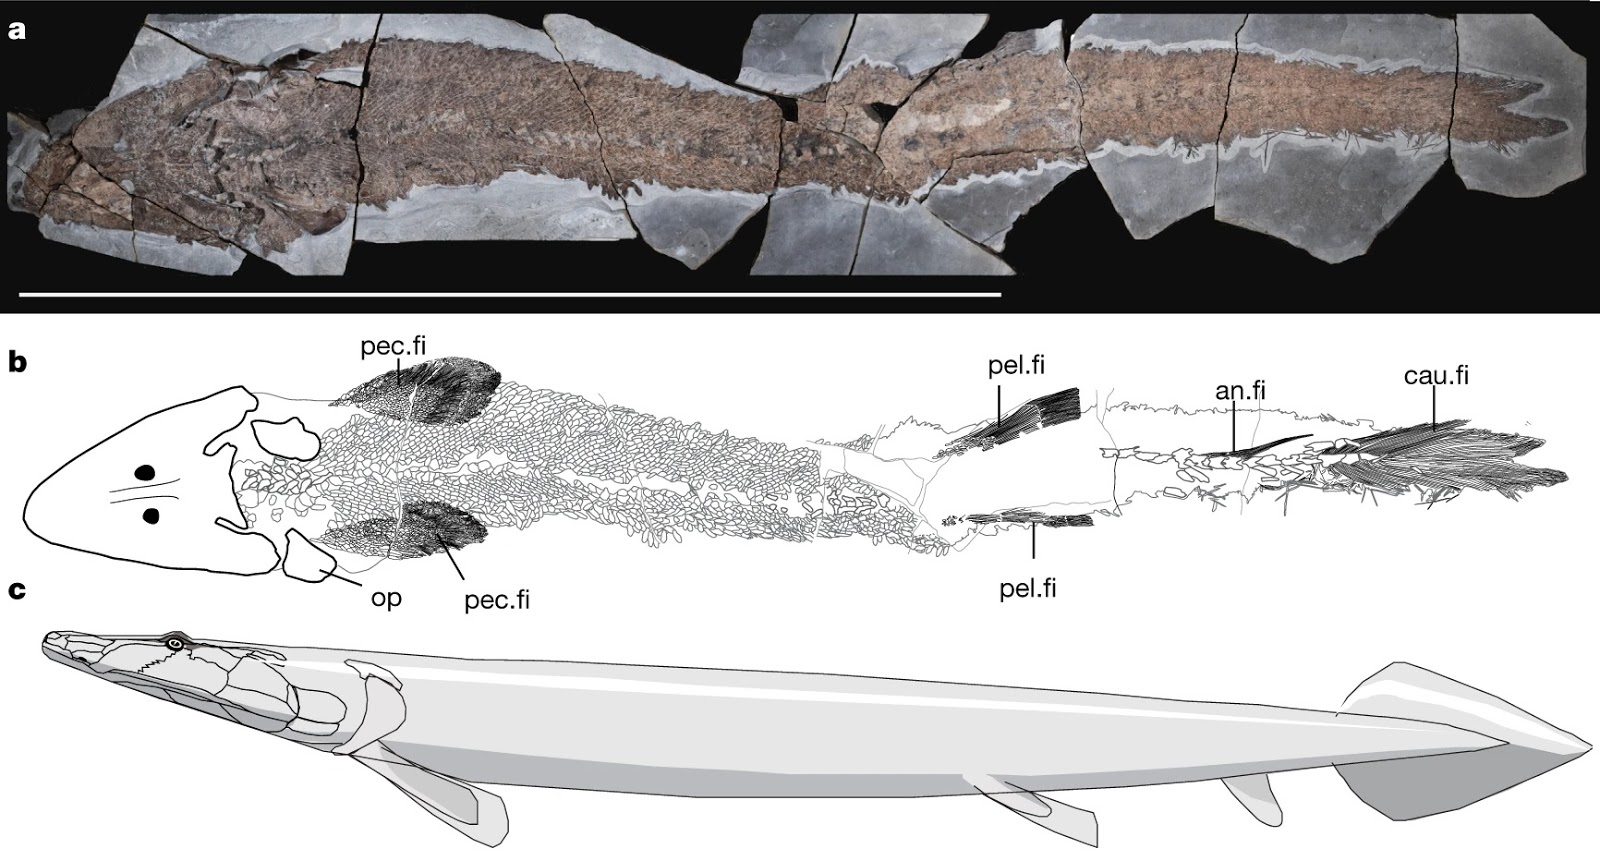 ฟอสซิลปลาโบราณเผยต้นกำเนิดวิวัฒนาการของน้ำมือมนุษย์ 1